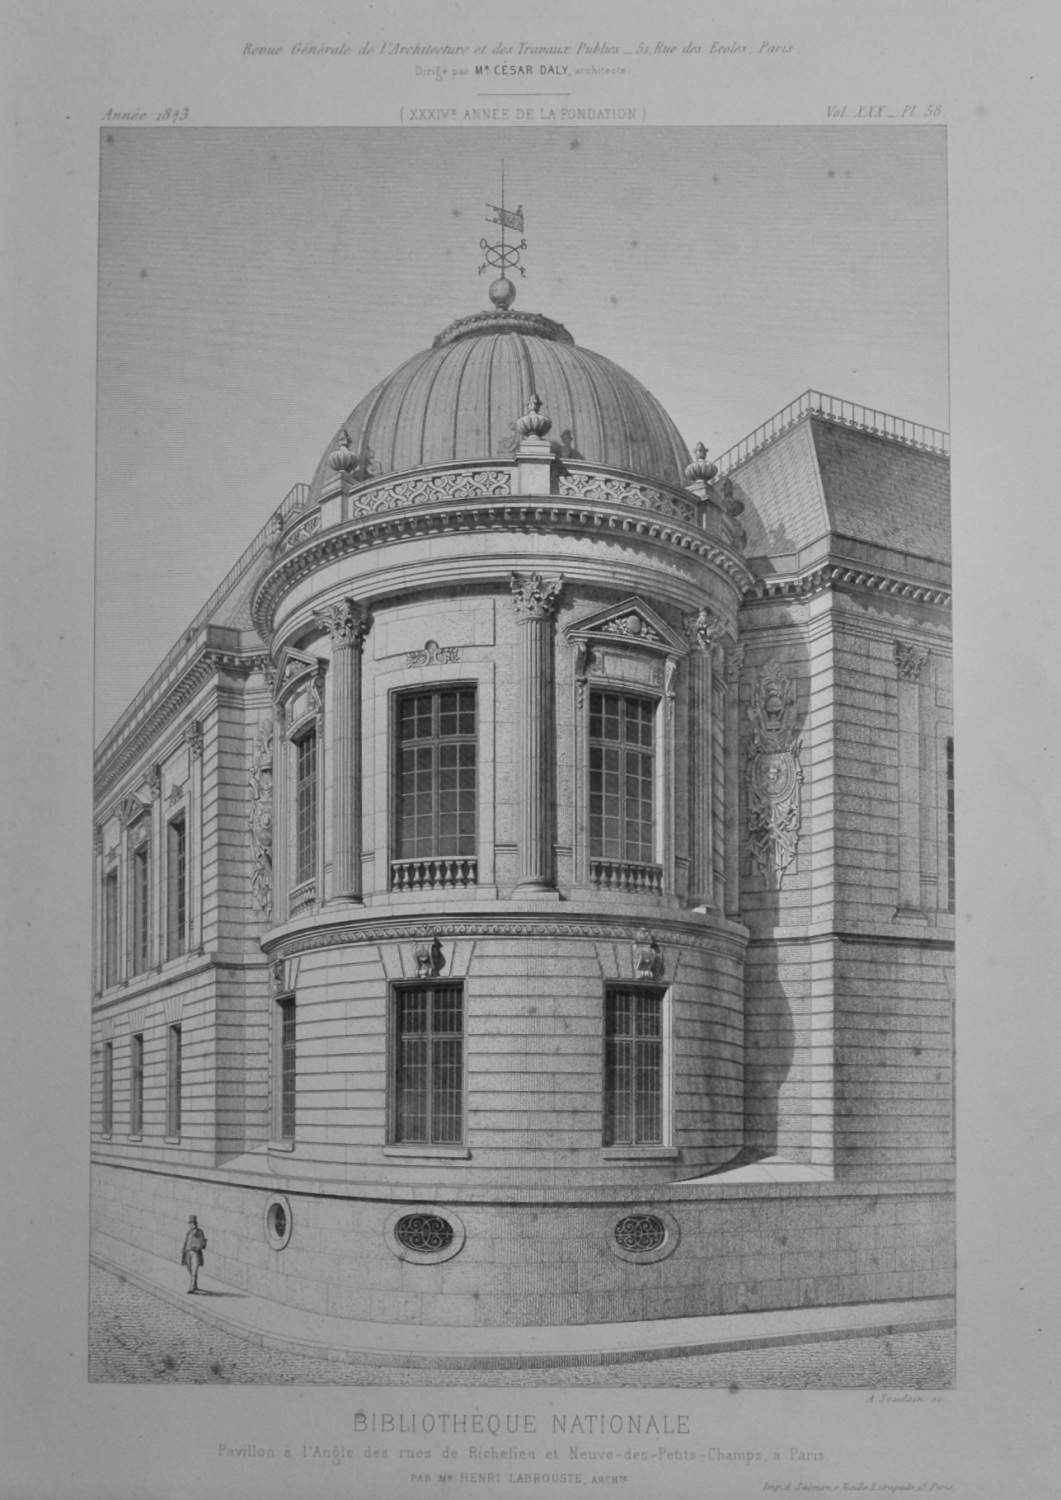 Bibliothèque Nationale, Pavillon a L'Angle des rues de Richelieu et Neuve-d